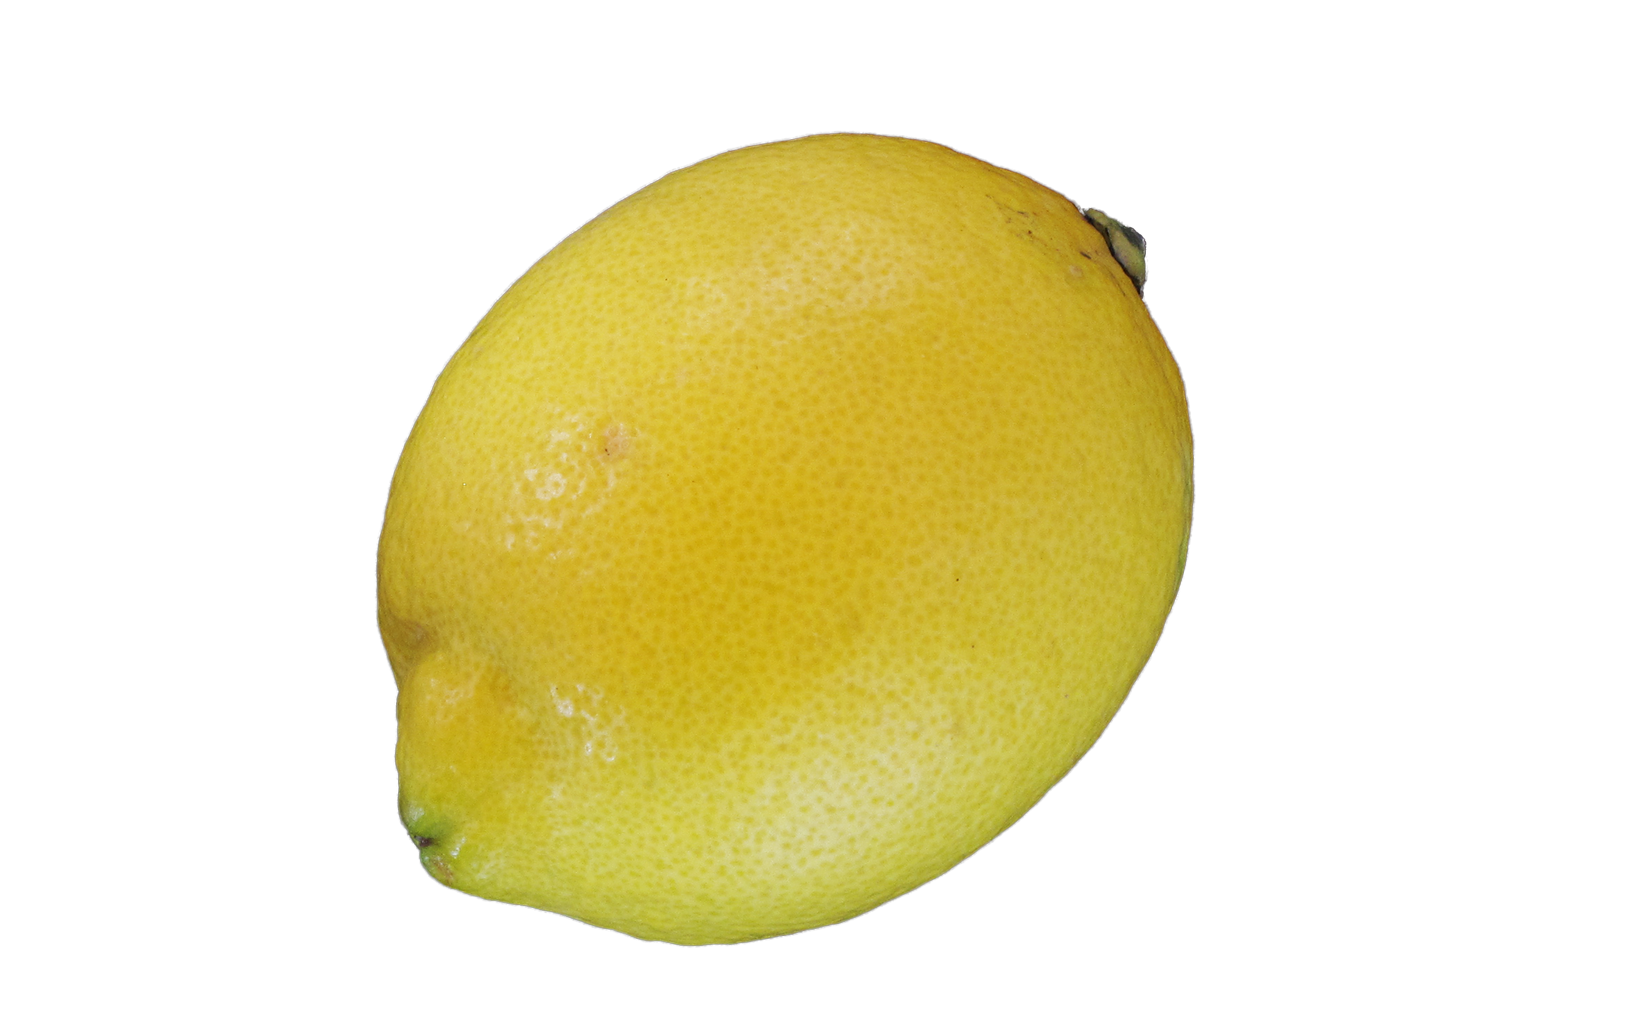 Картинка для детей лимон на прозрачном фоне. Фрукты лимон. Желтый лимон. Лимон картинка. Овальный лимон.